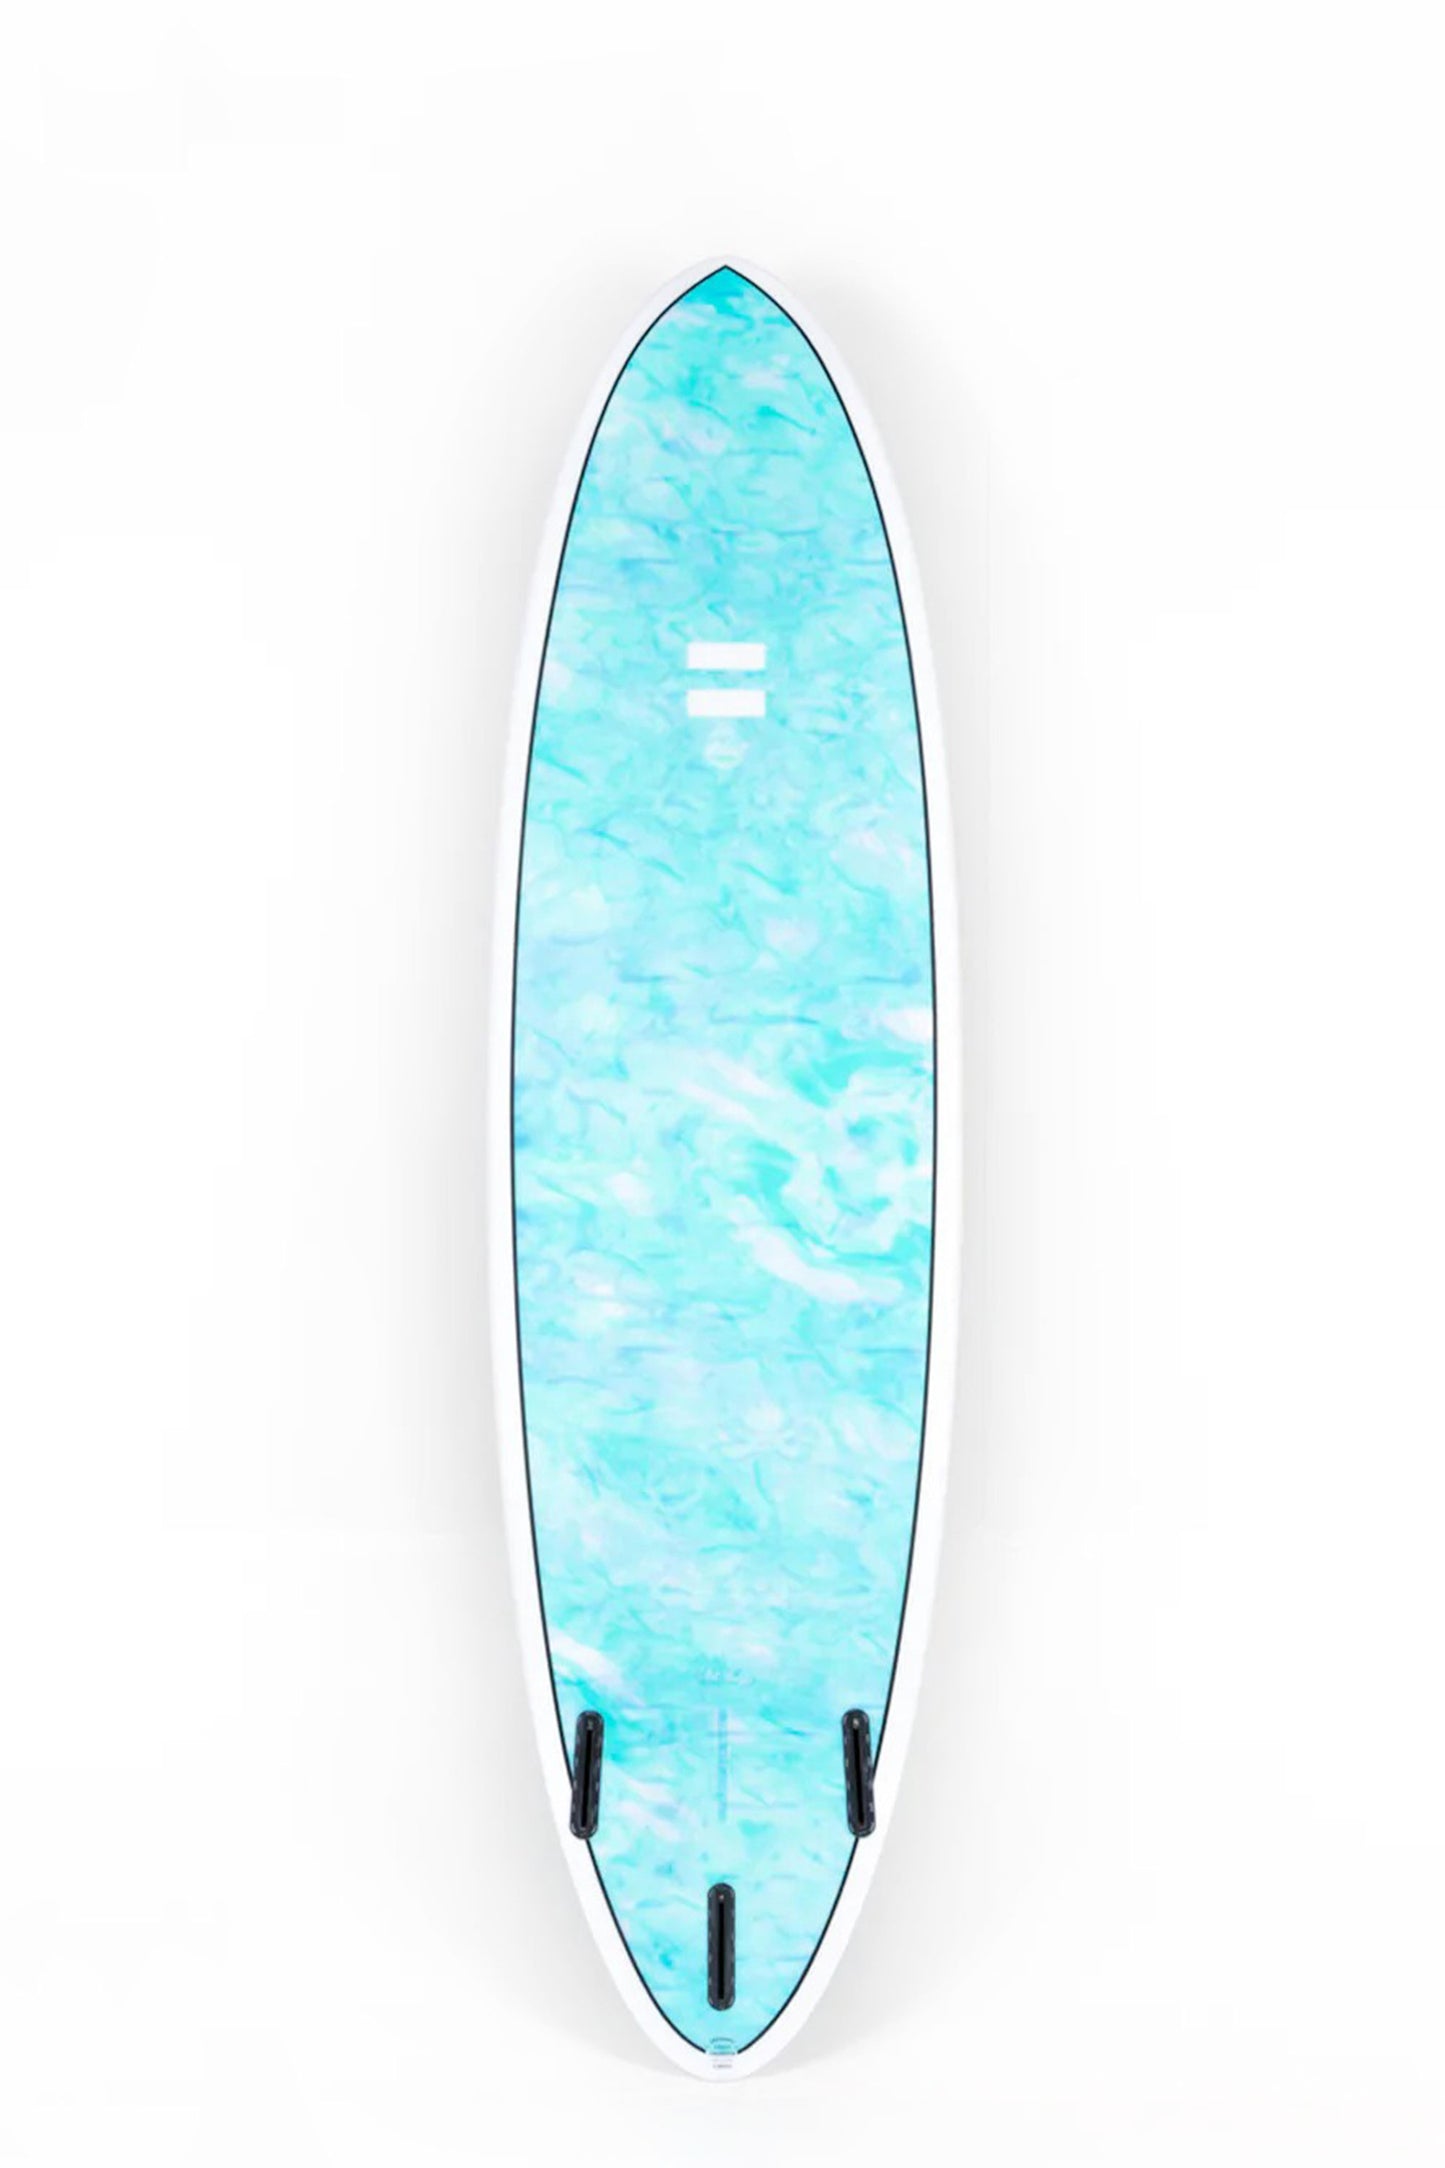 Pukas Surf Shop - Indio Endurance - THE EGG Swirl Effect Blue Mint - 7´10" x 23 1/4 x 3 - 64L